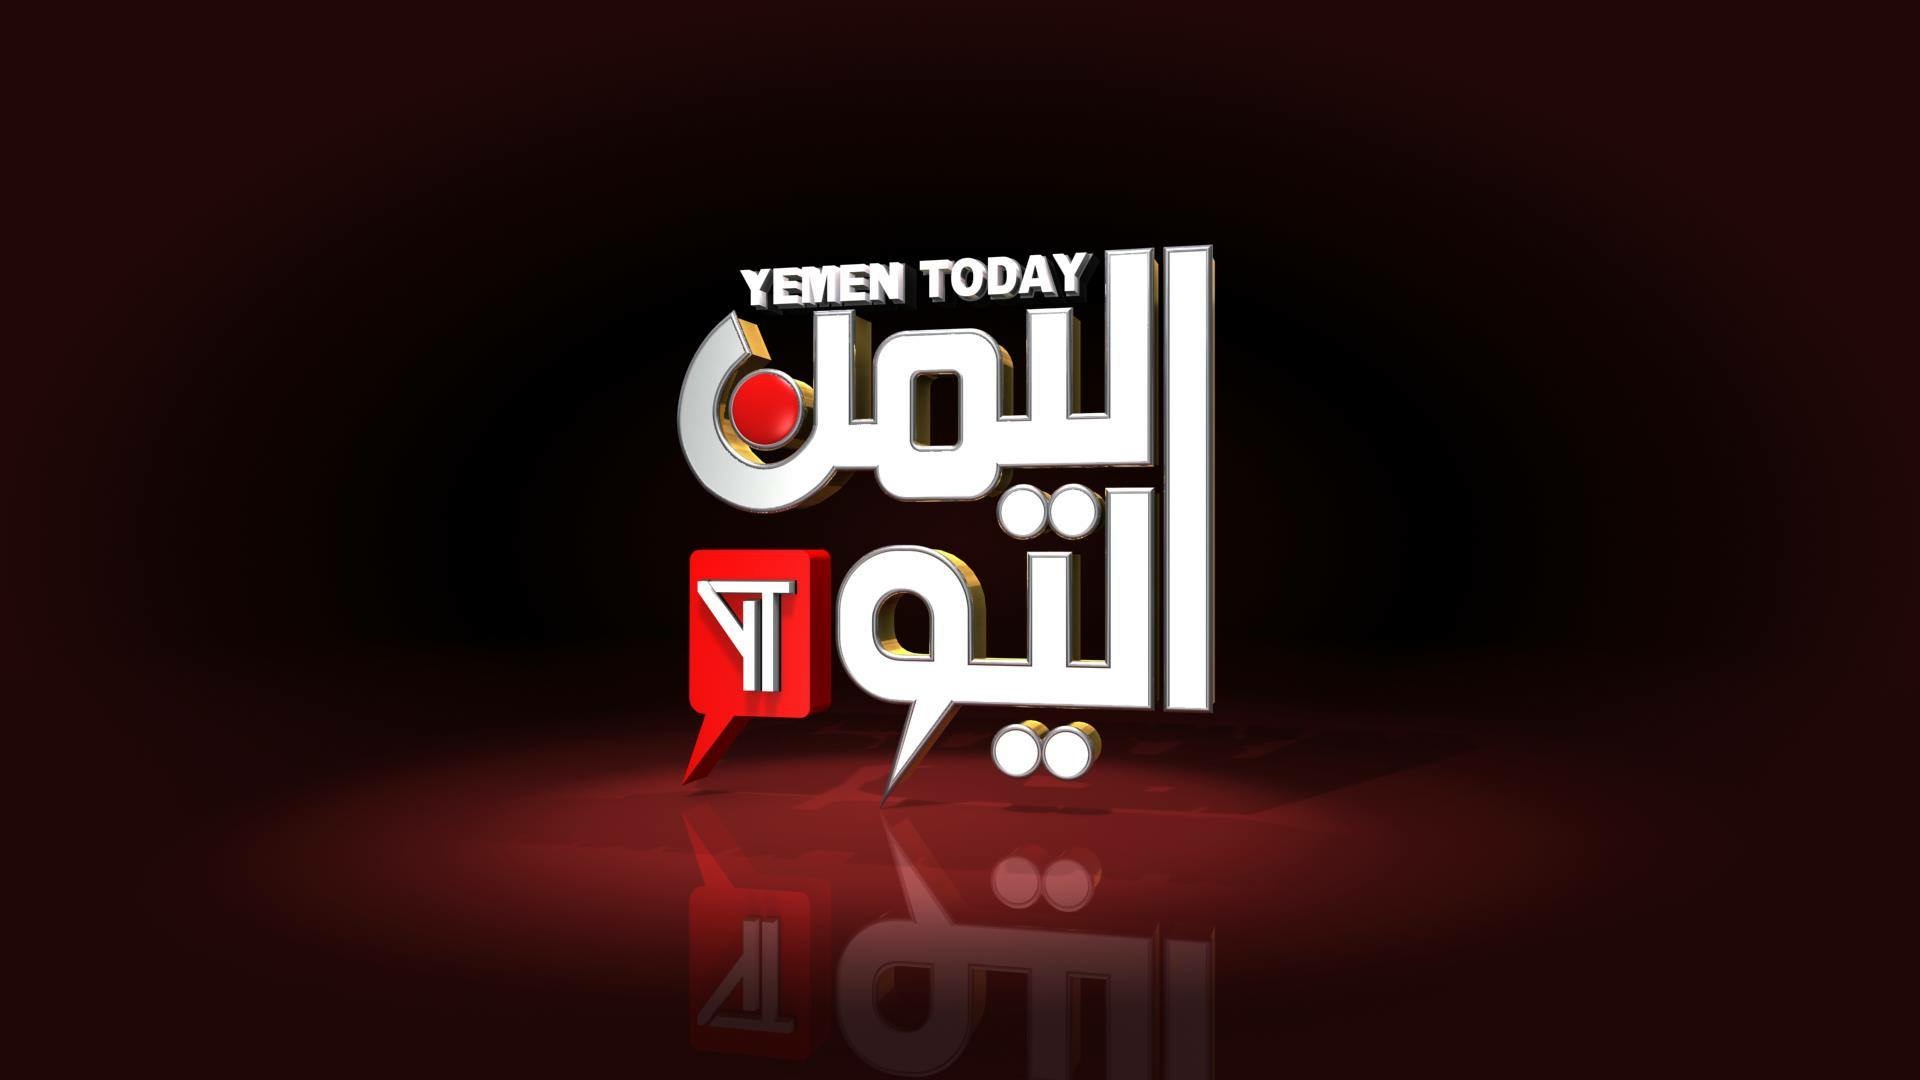 قناة اليمن اليوم المملوكة لعائلة علي عبدالله صالح تعاود البث بتردد جديد ودعم عربي